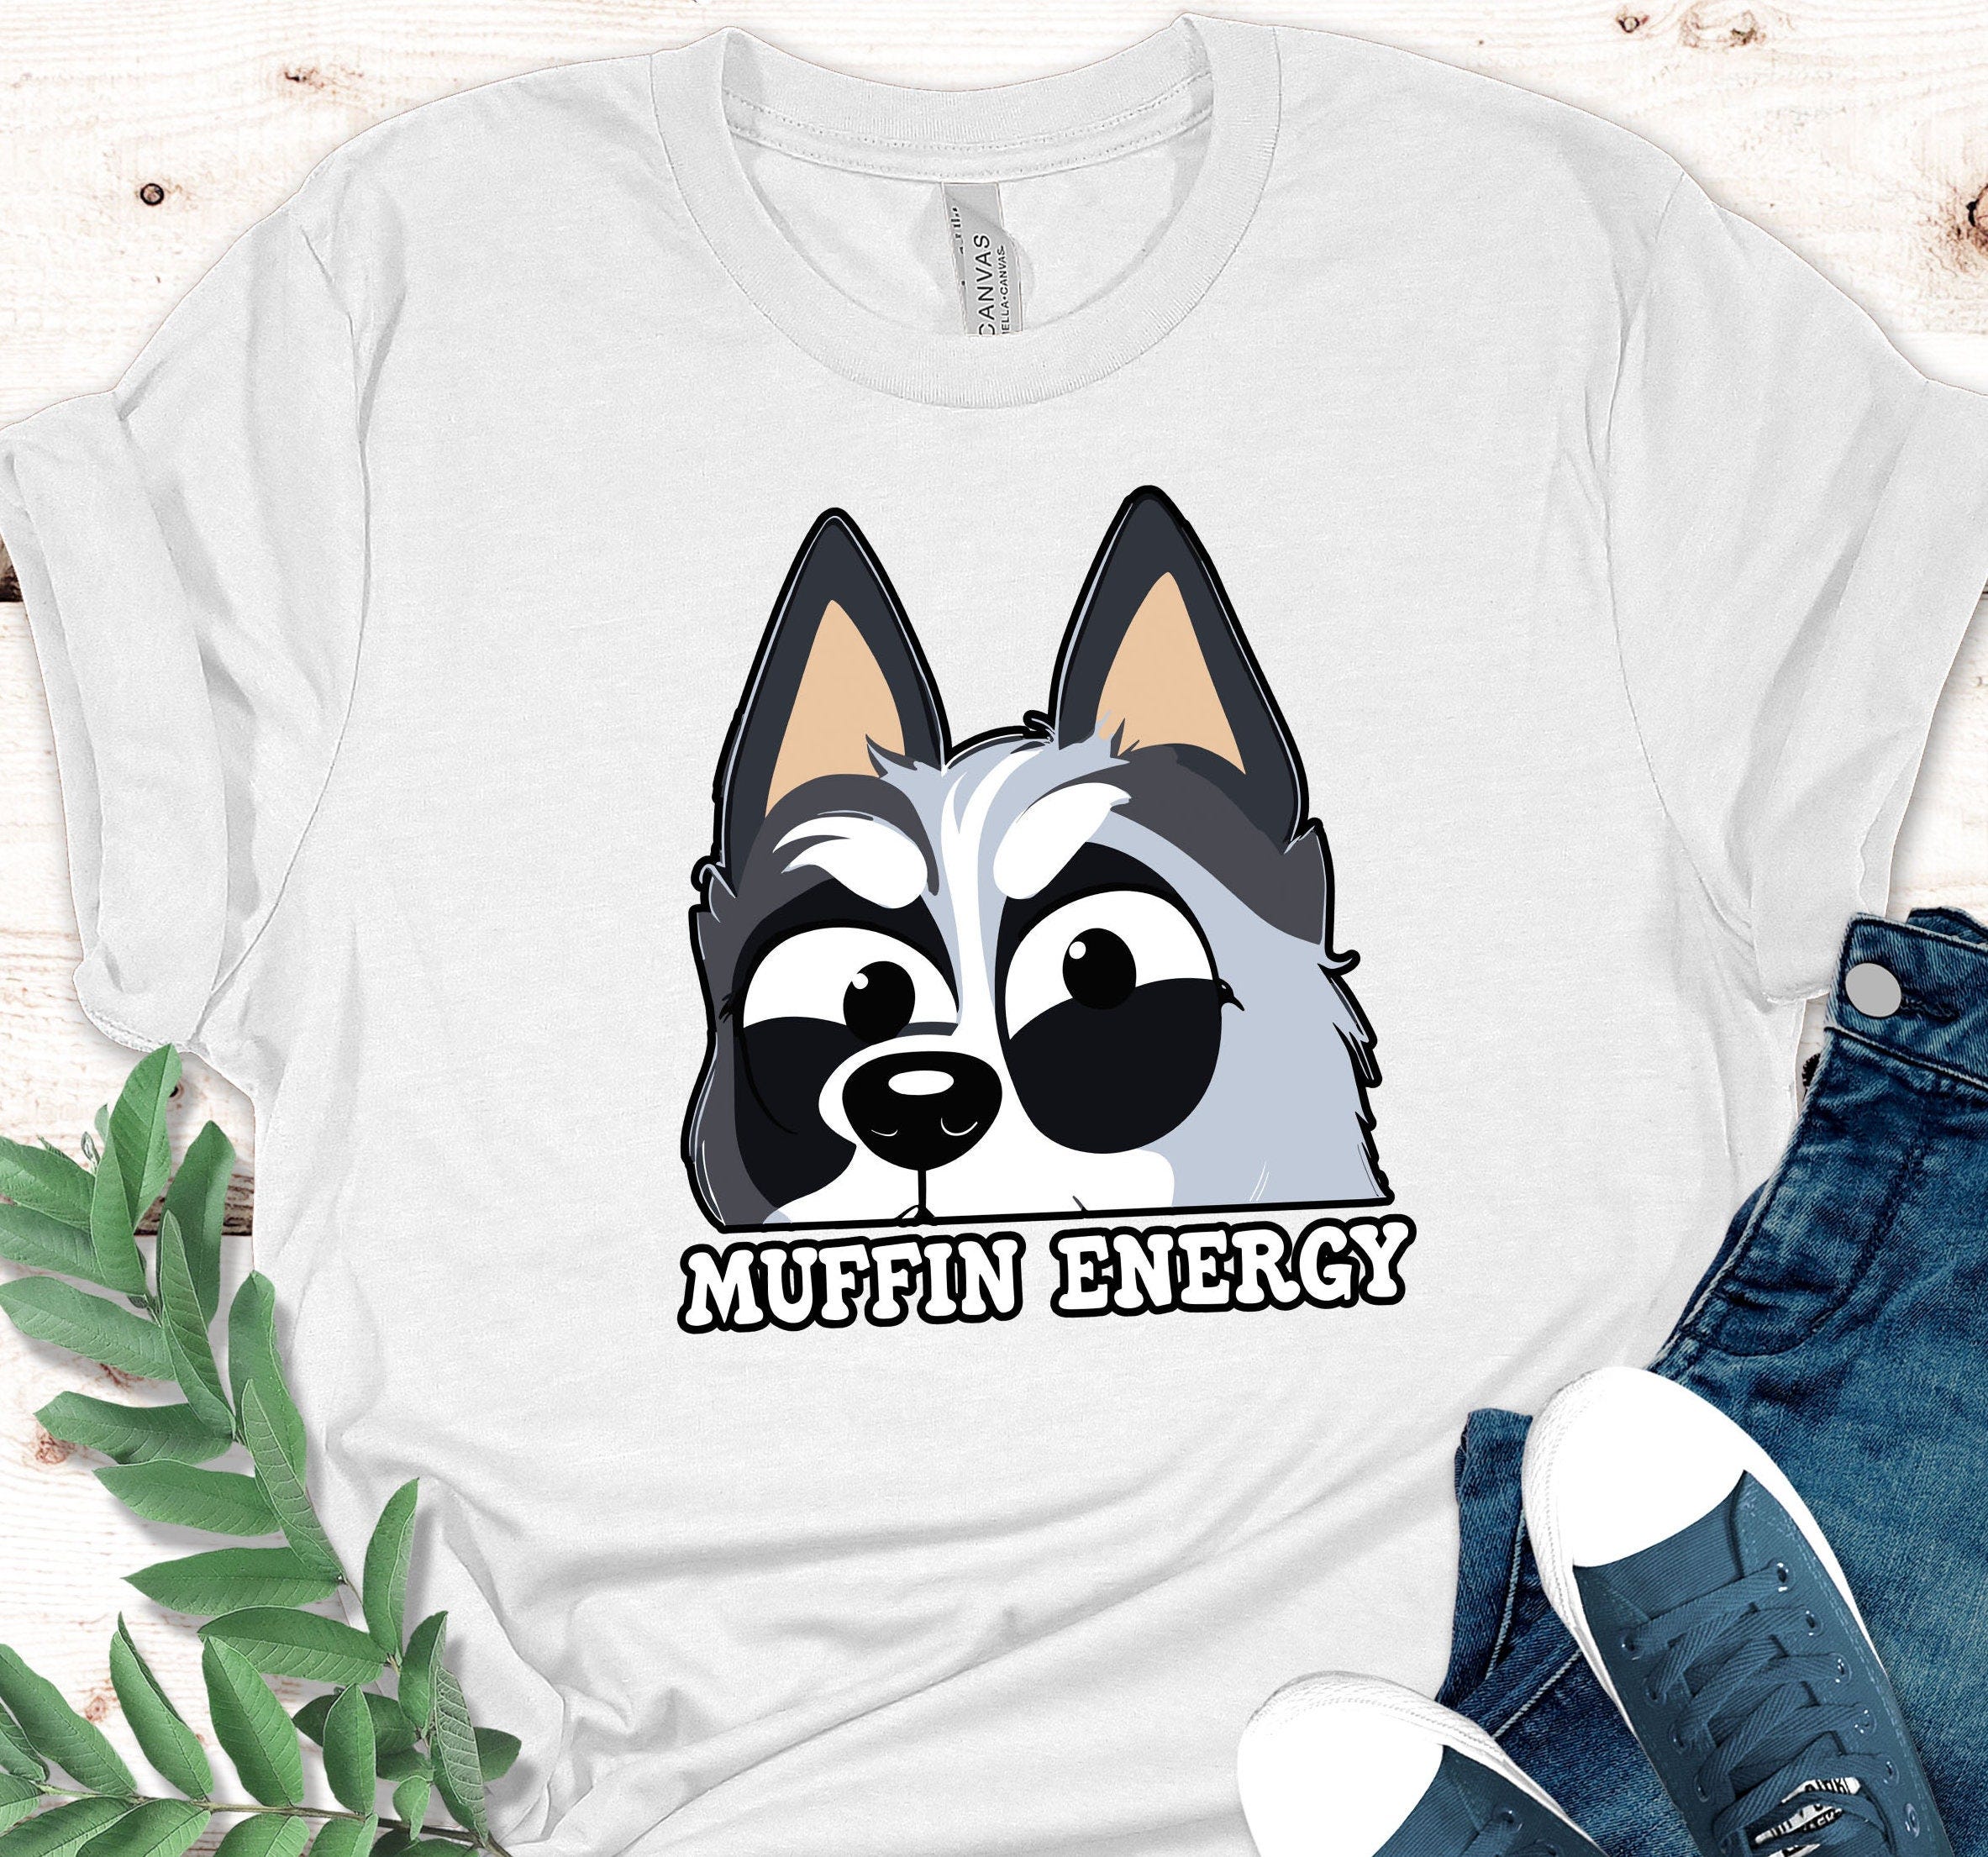 Muffin Emotions Shirt, Muffin Heeler Shirt, Muffin Energy Shirt, Muffin Bluey Gift,Muffin Tee, Muffin Birthday Bluye Cartoon,